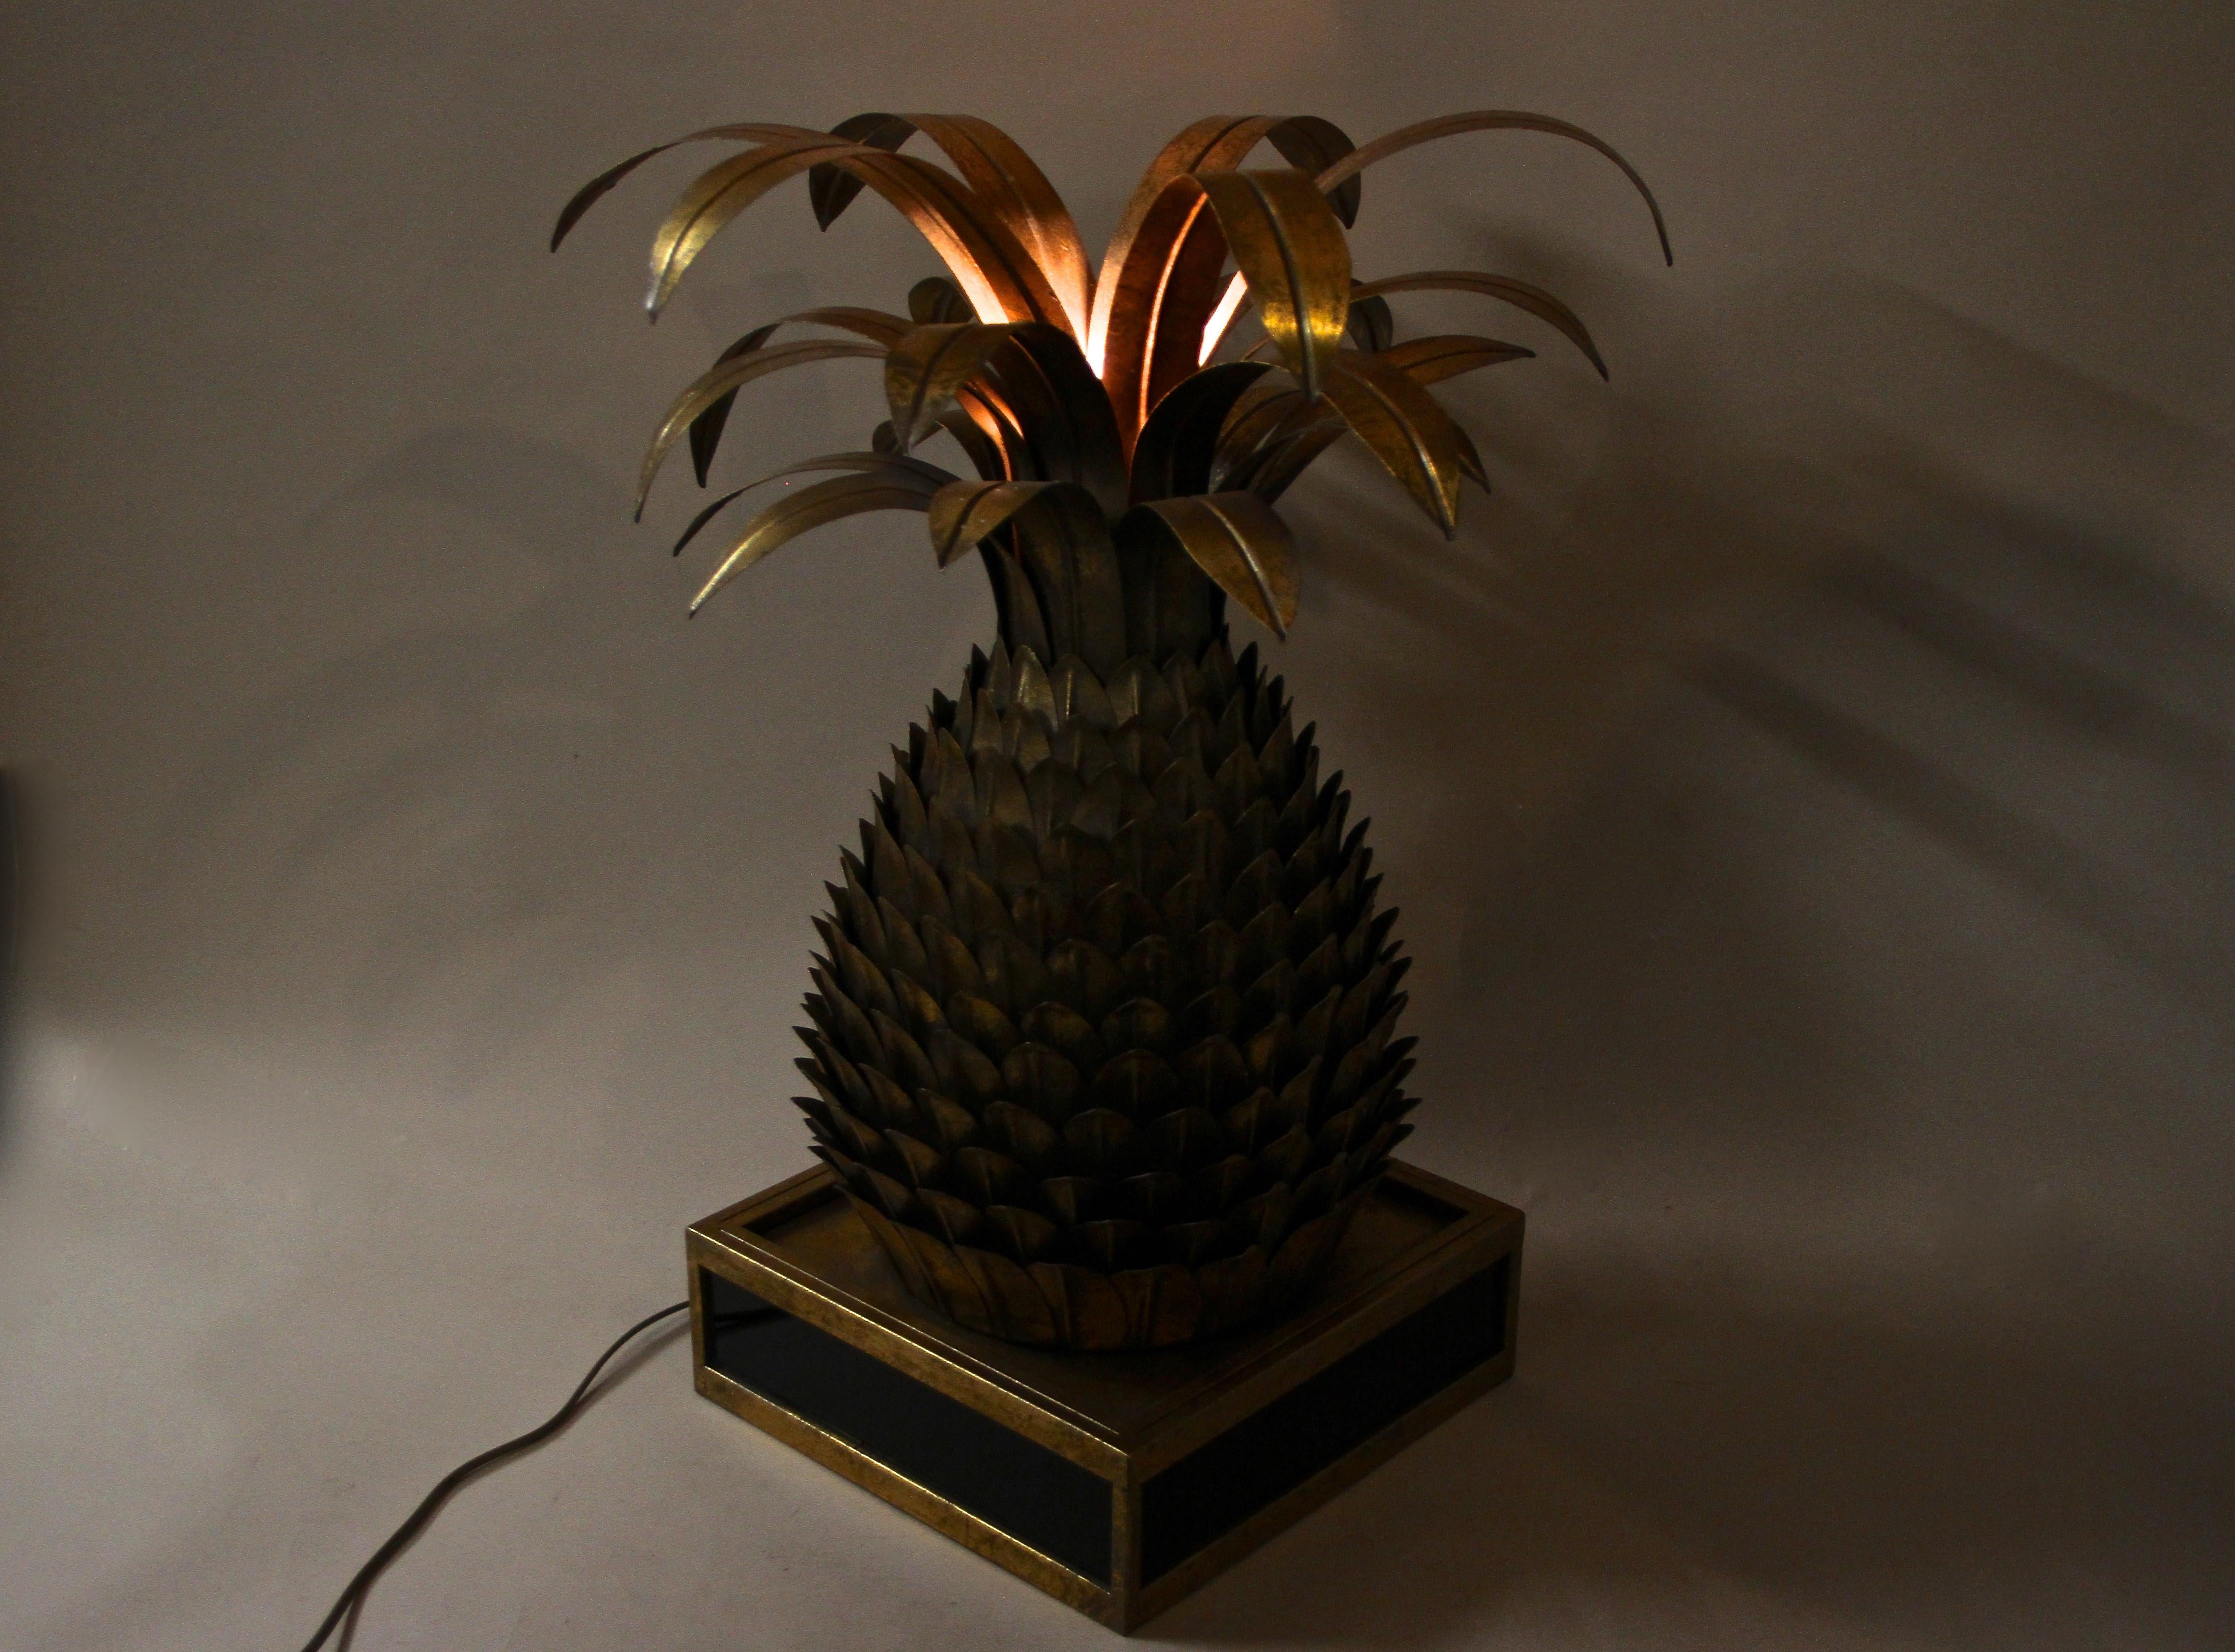 Extraordinaire lampe de table Ananas en laiton des années 1960/70 en France attribuée à la Maison Jansen. Fabriquée avec art en laiton, cette lampe de table ouvragée est un véritable chef-d'œuvre de design. Au sommet d'une belle base, faite de